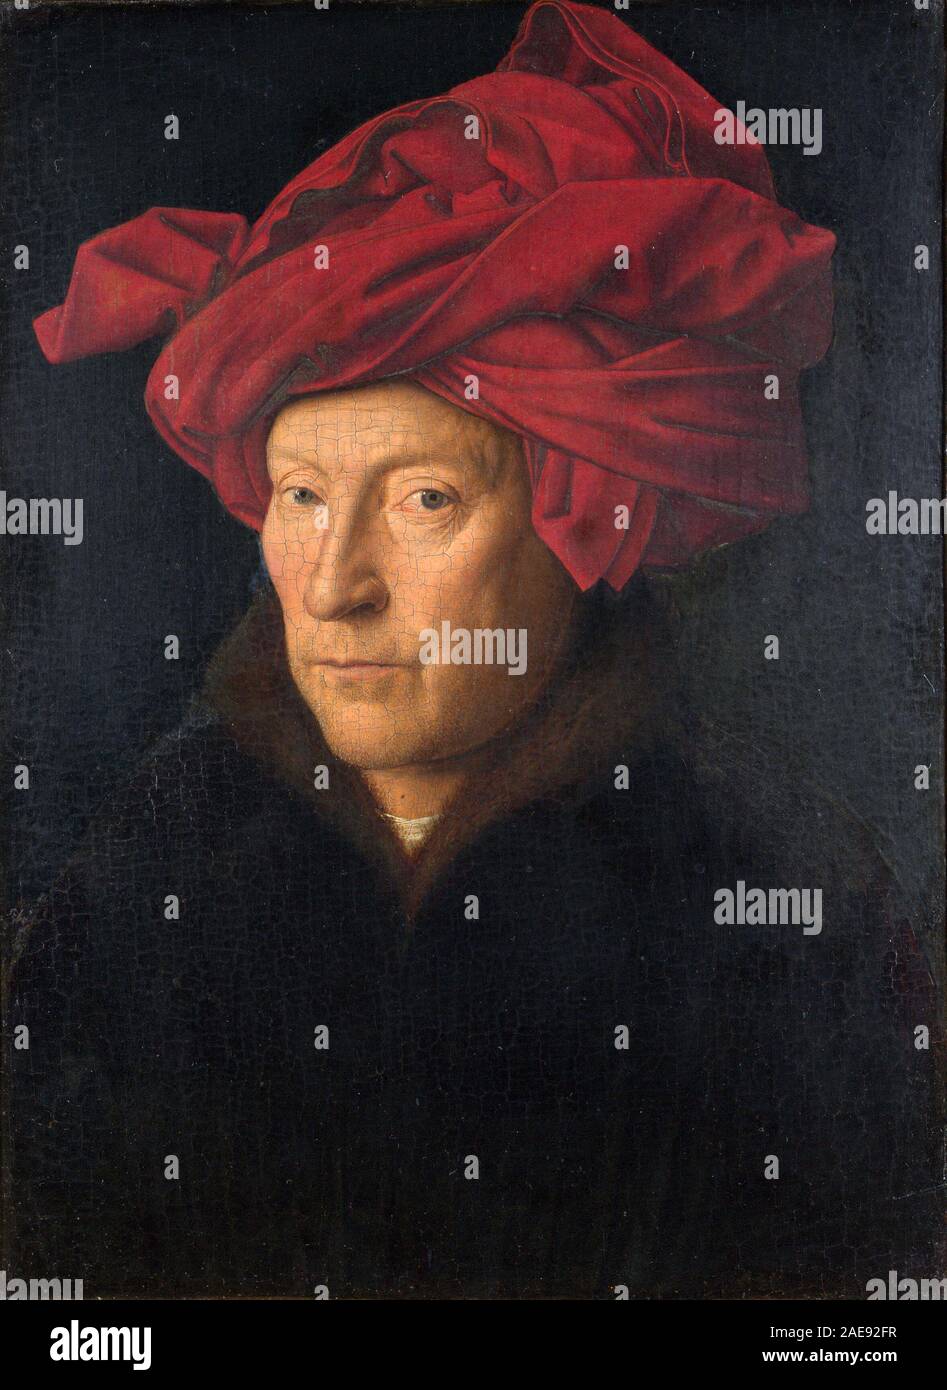 Jan van Eyck, Bildnis eines Mannes, Self-portrait von Jan van Eyck, Jan van Eyck (1390 - ca. 1441), flämischer Maler Stockfoto